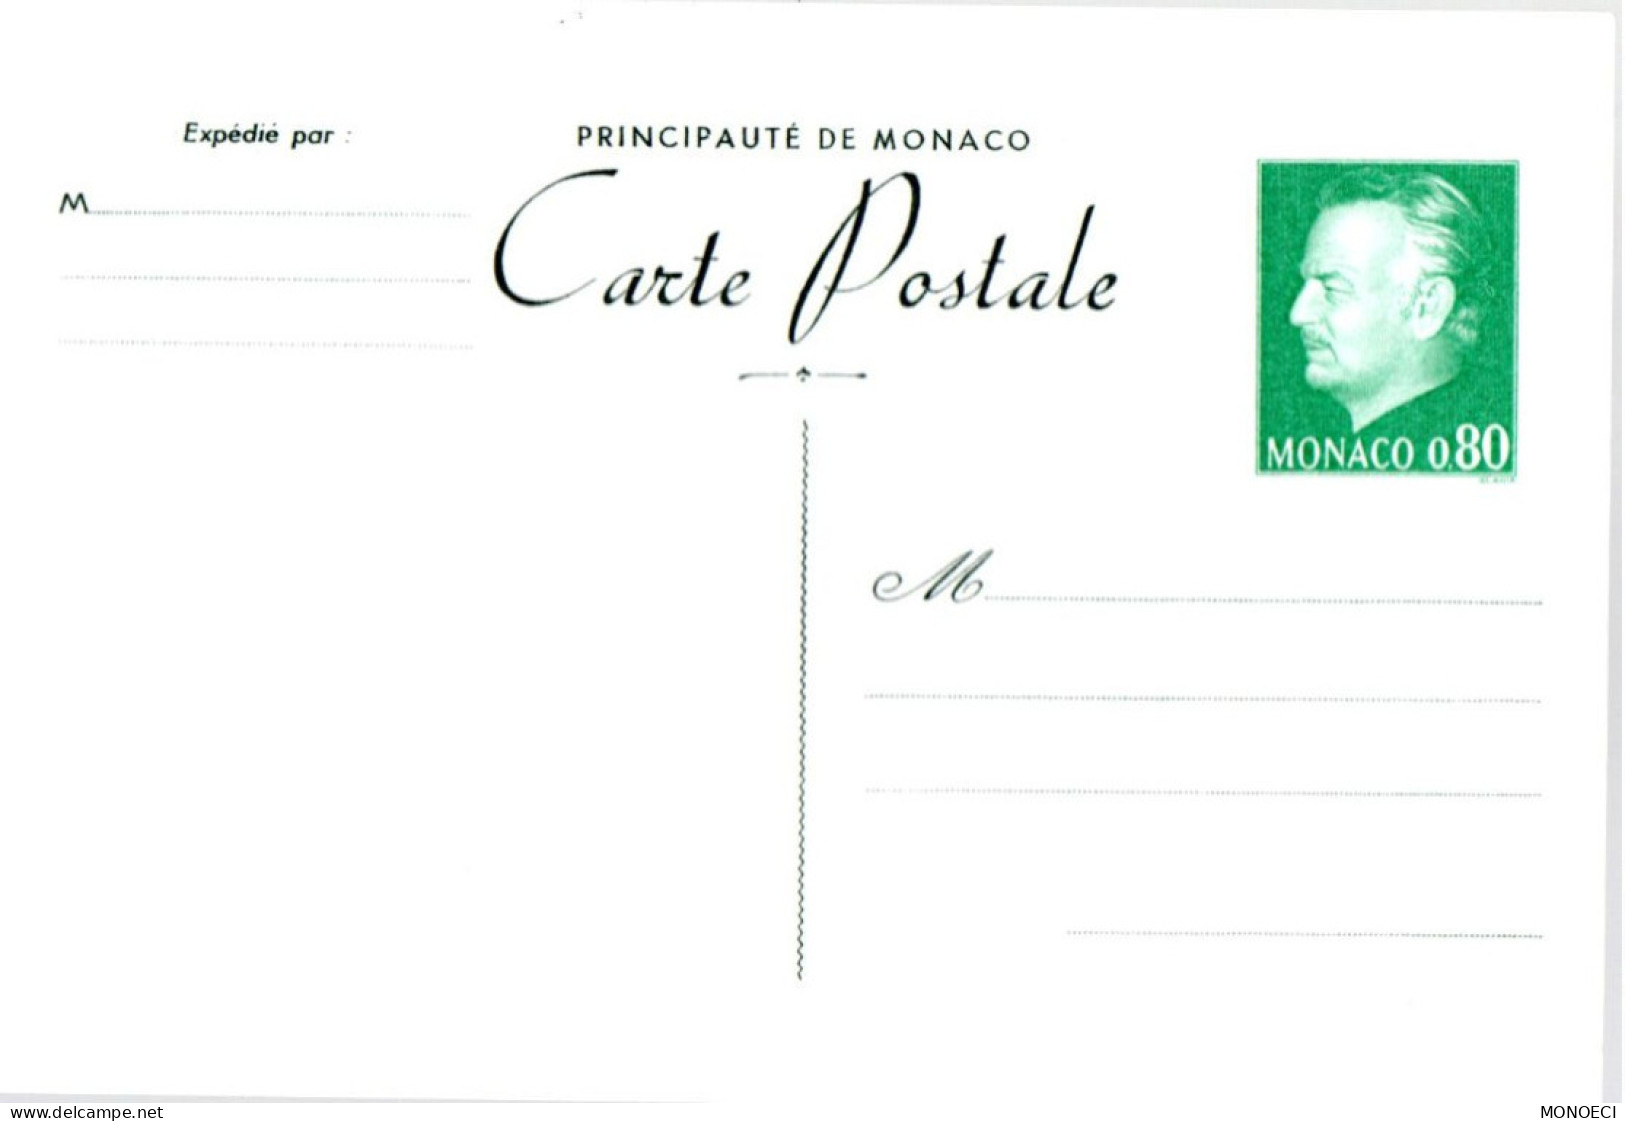 MONACO -- MONTE CARLO -- Monégasque -- ENTIER POSTAL -- CPA -- 0,80 C. Prince Rainier III (1977) - Entiers Postaux